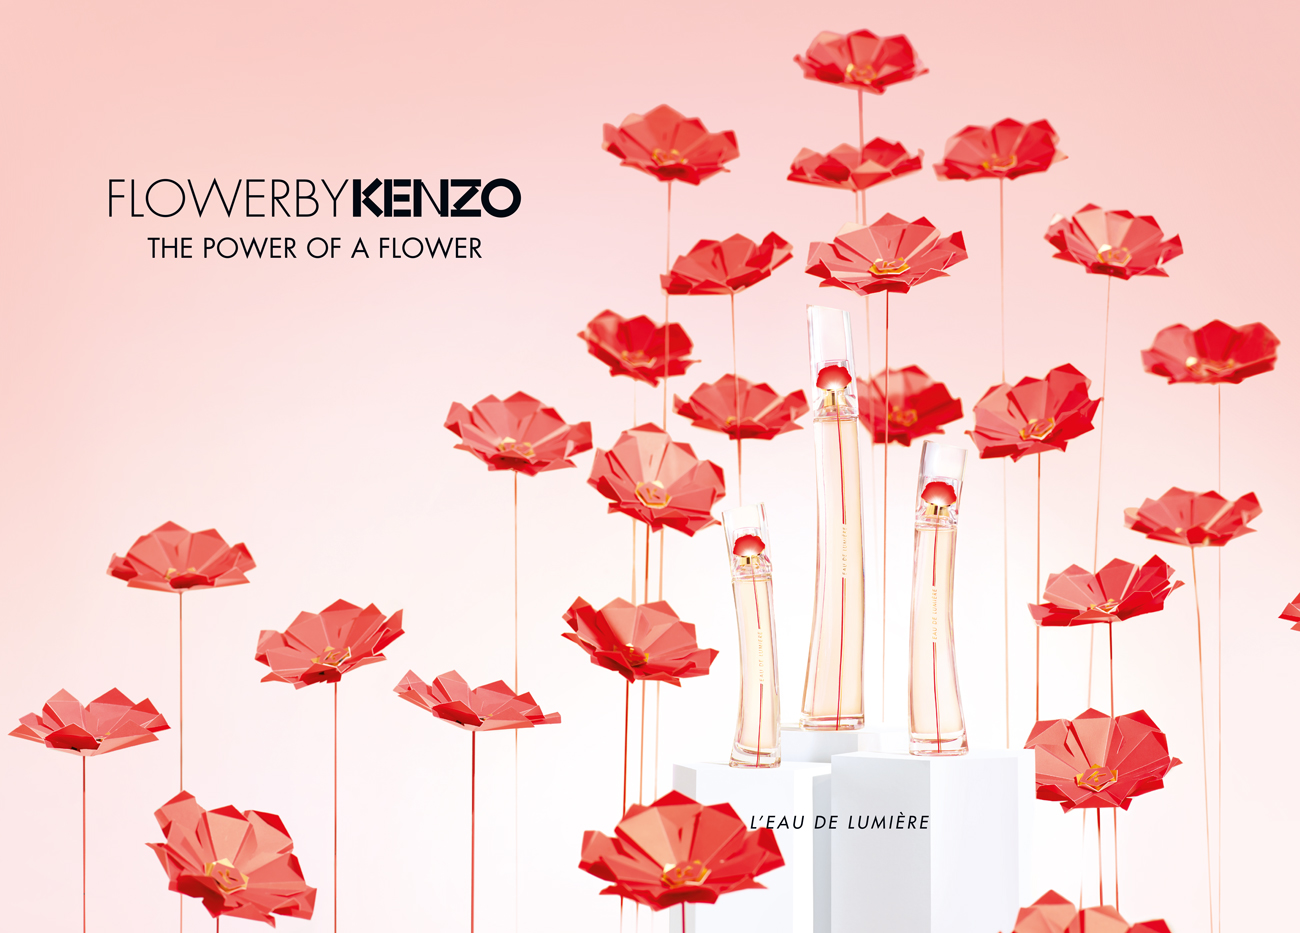 Kenzo studio design Maud Vantours set design paper flowers Paris